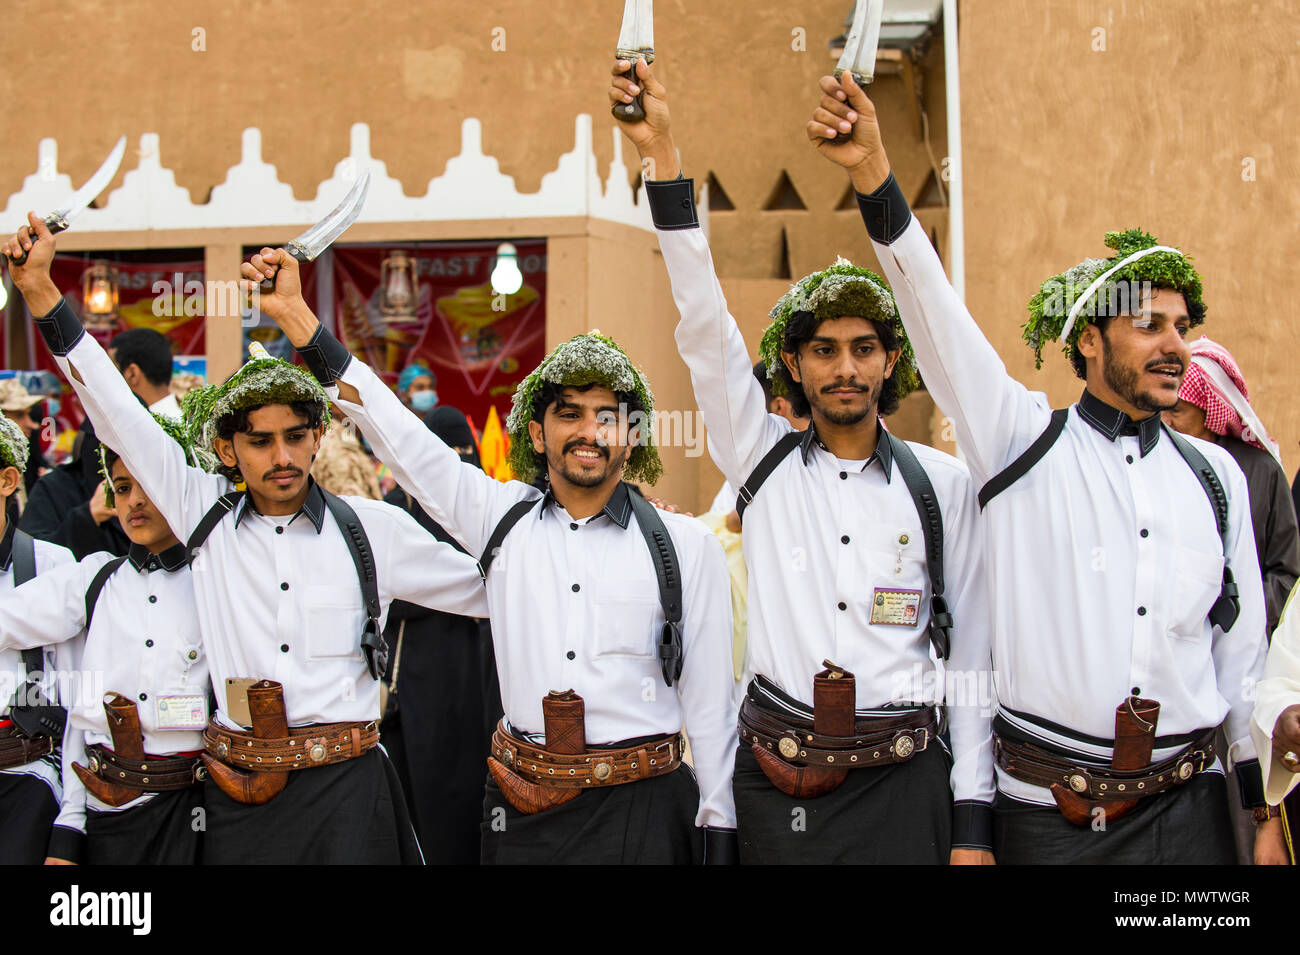 Colorato tradizionalmente condita uomini, al Festival Janadriyah, Riyadh, Arabia Saudita, Medio Oriente Foto Stock